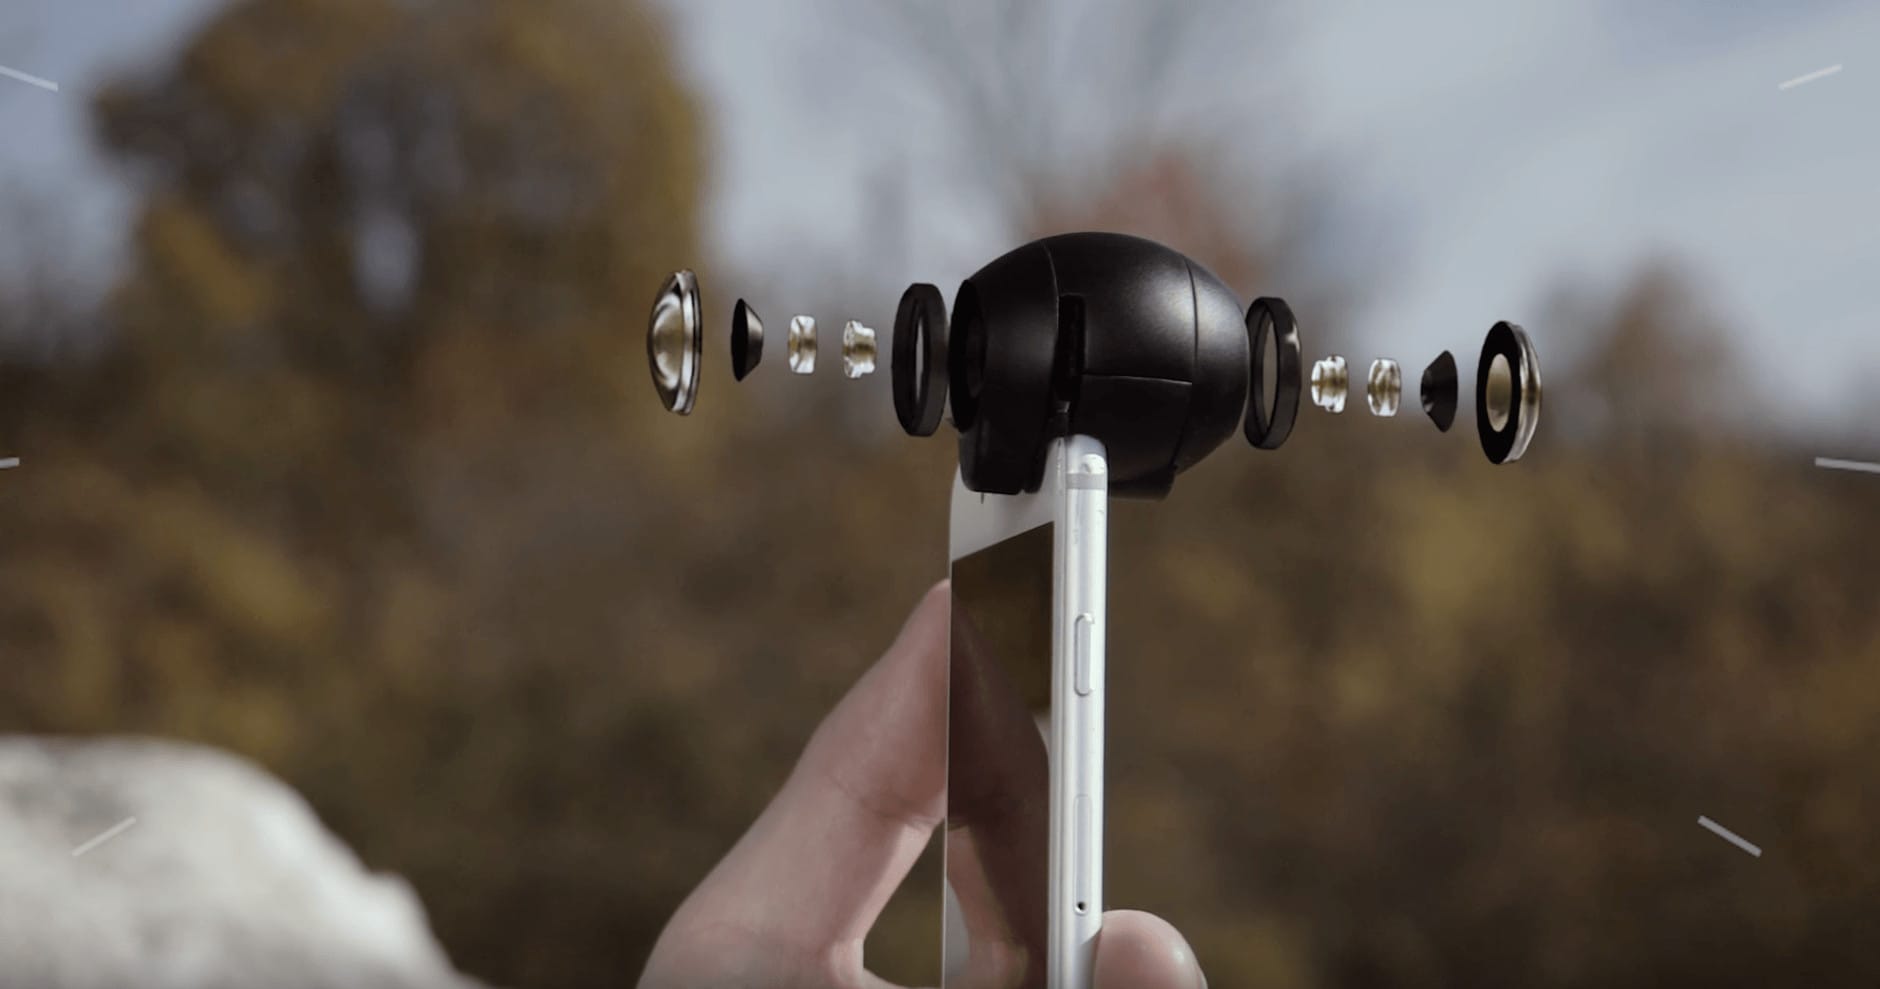 Fishball 360-degree video lens